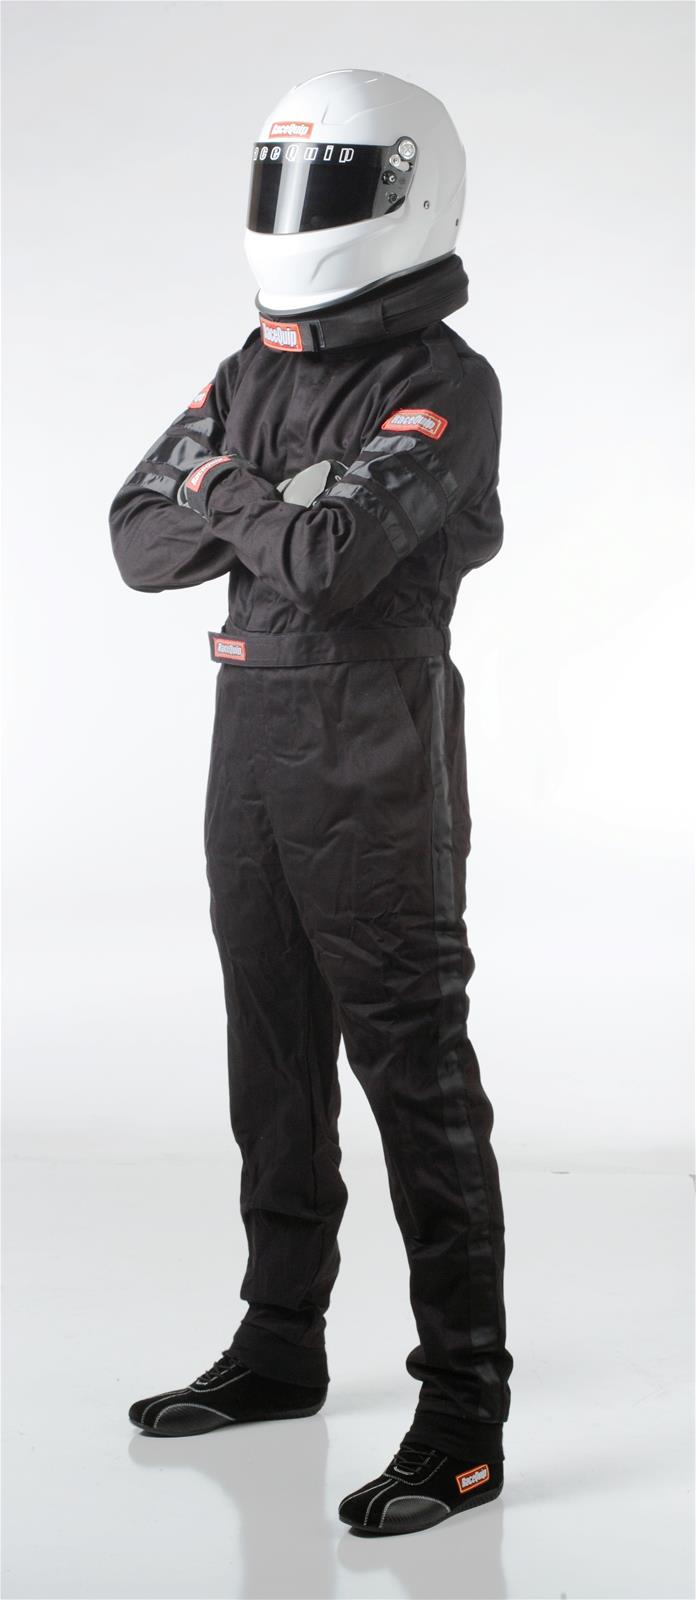 Racequip 110003 110 Series  SFI-1 Suits - Medium - Black